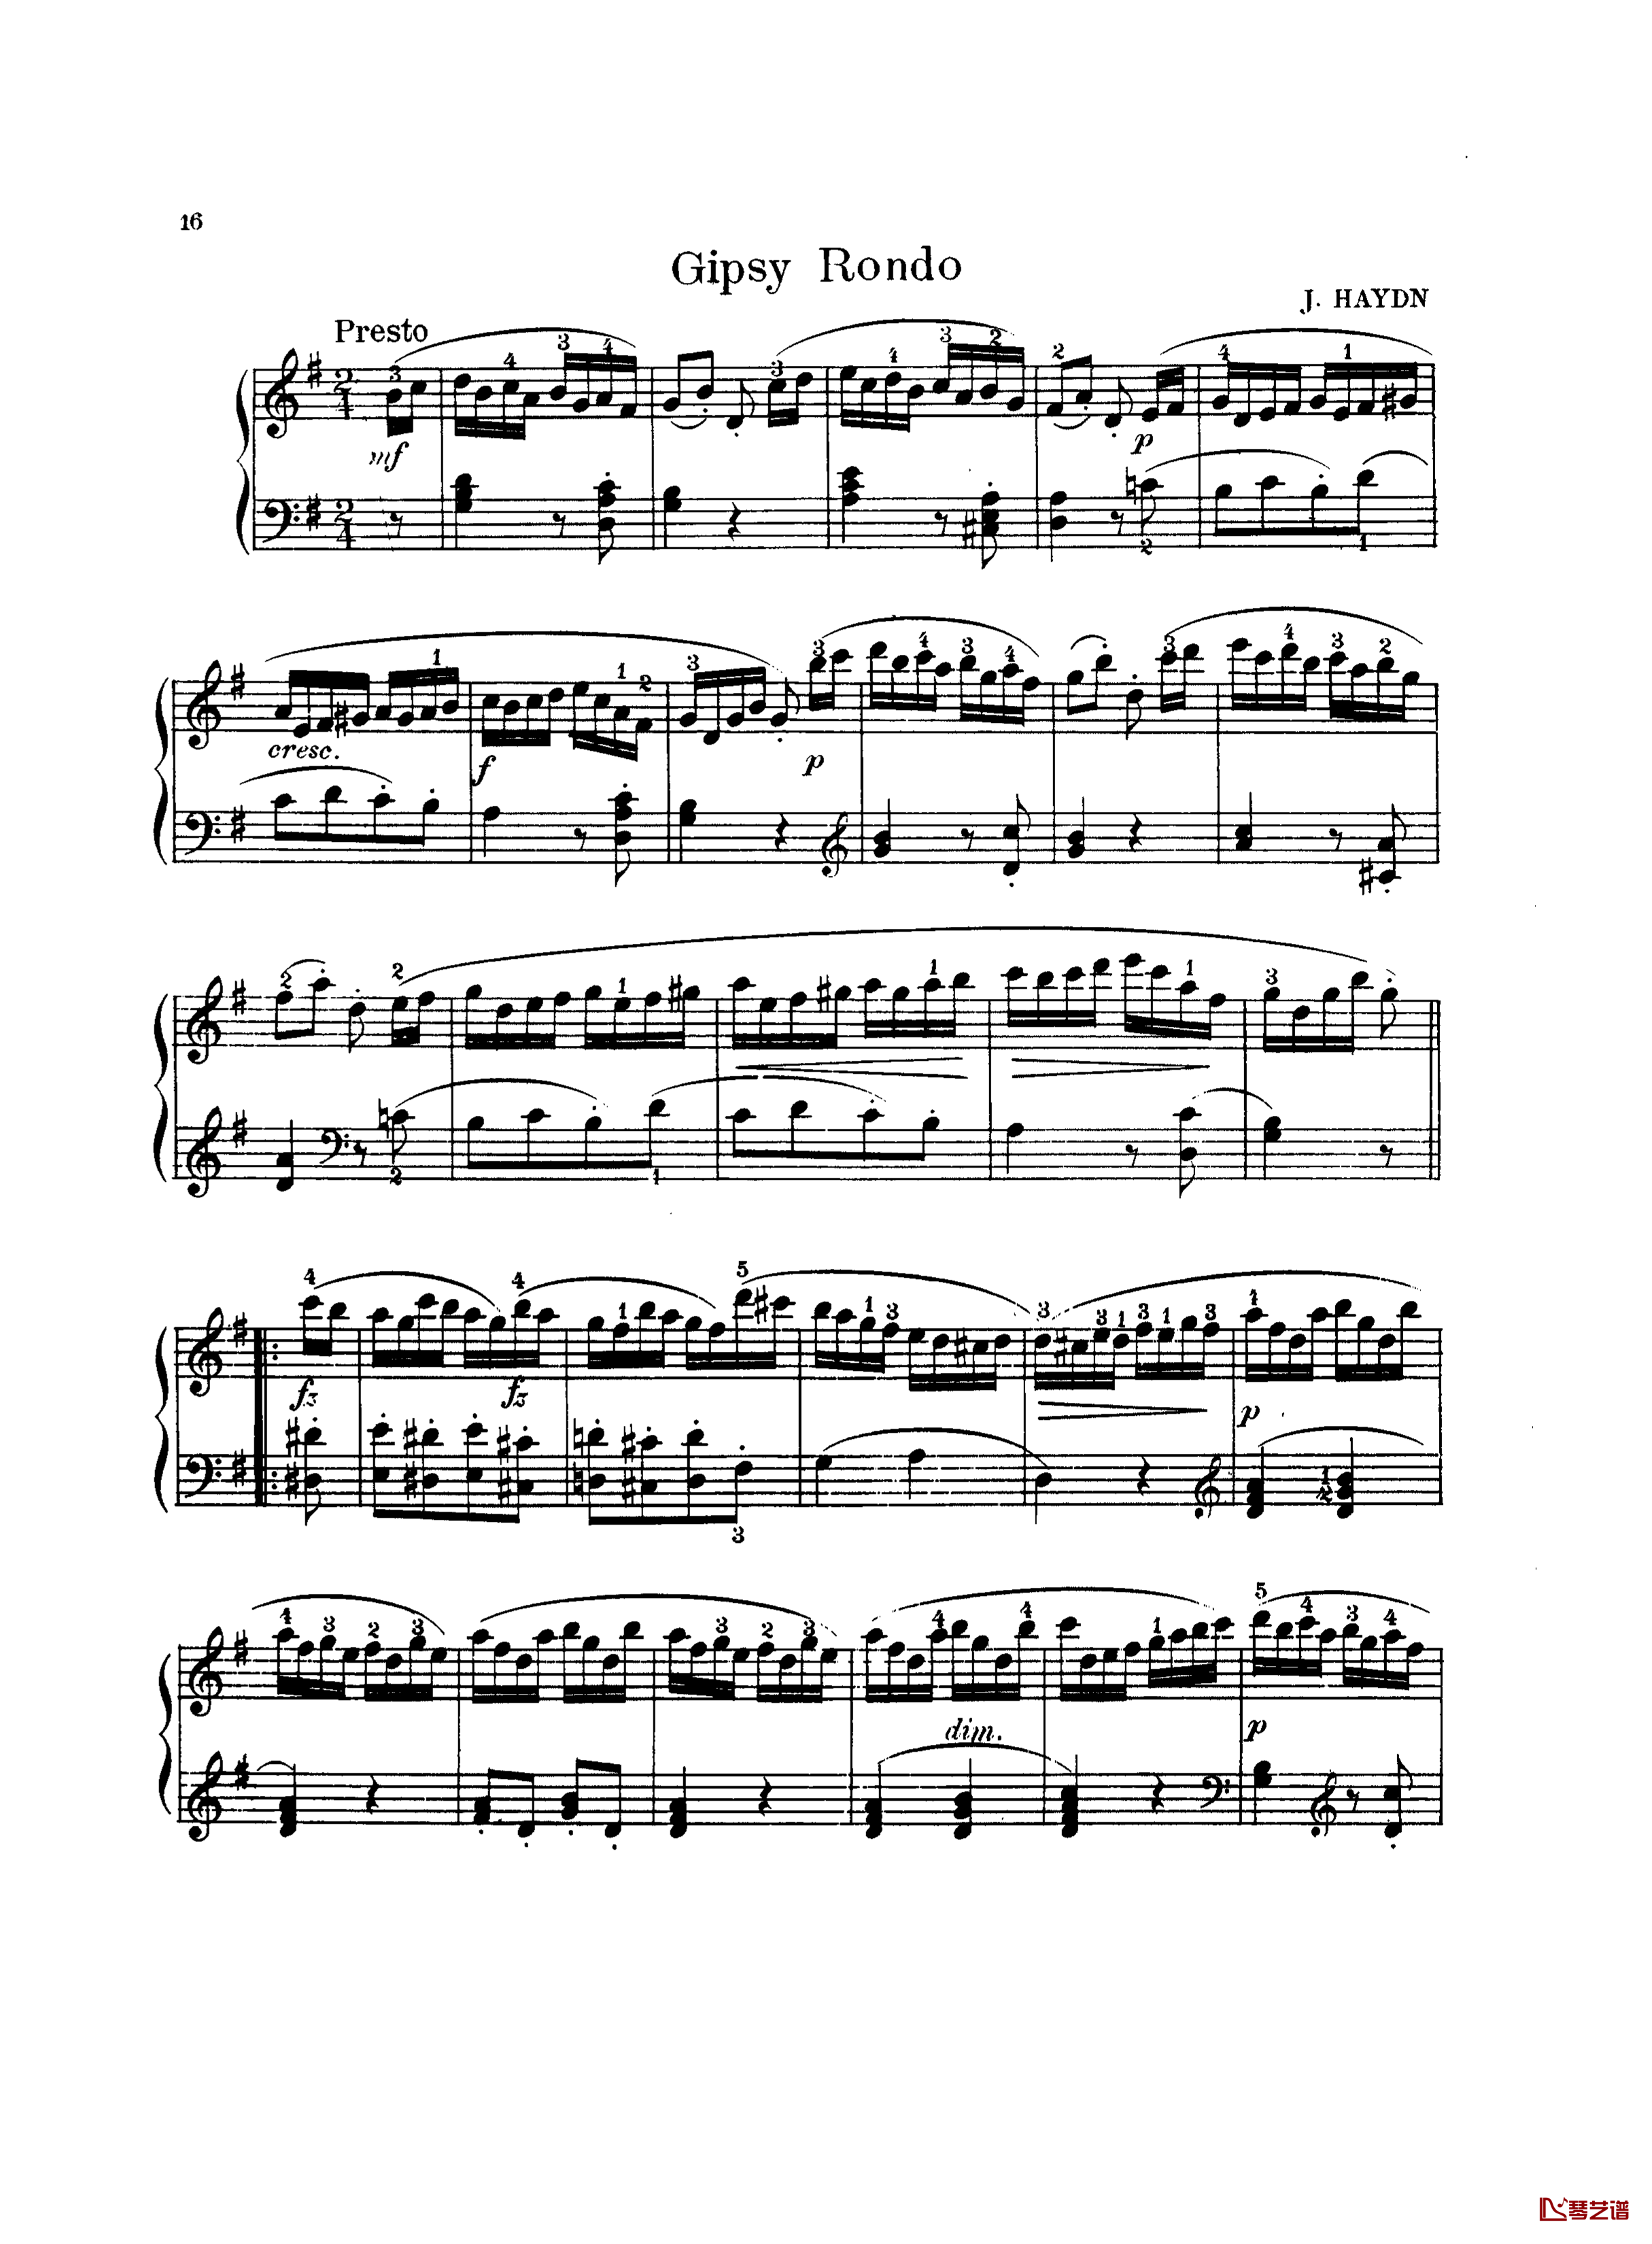 吉普赛回旋曲钢琴谱-带指法版-海顿1